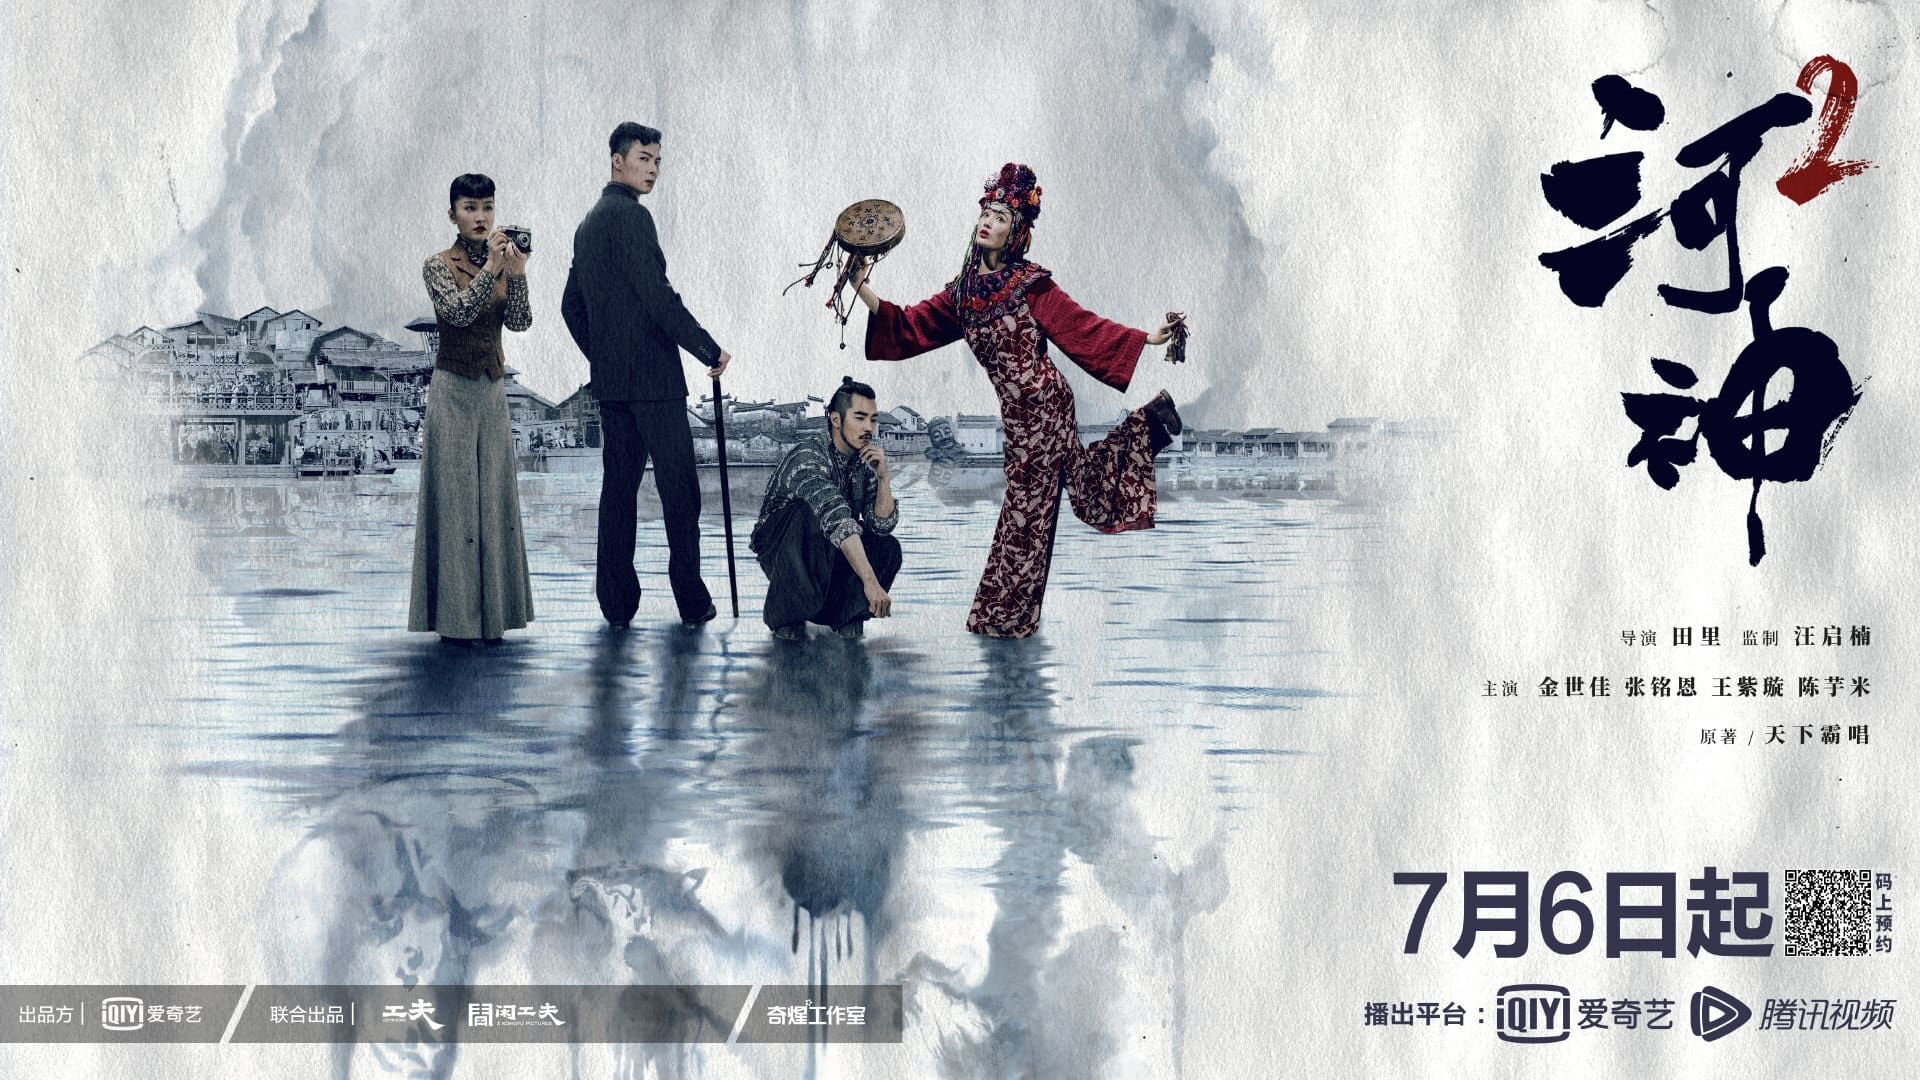 دانلود سریال چینی عارف تینتسین 2 Tientsin Mystic 2 (2020)